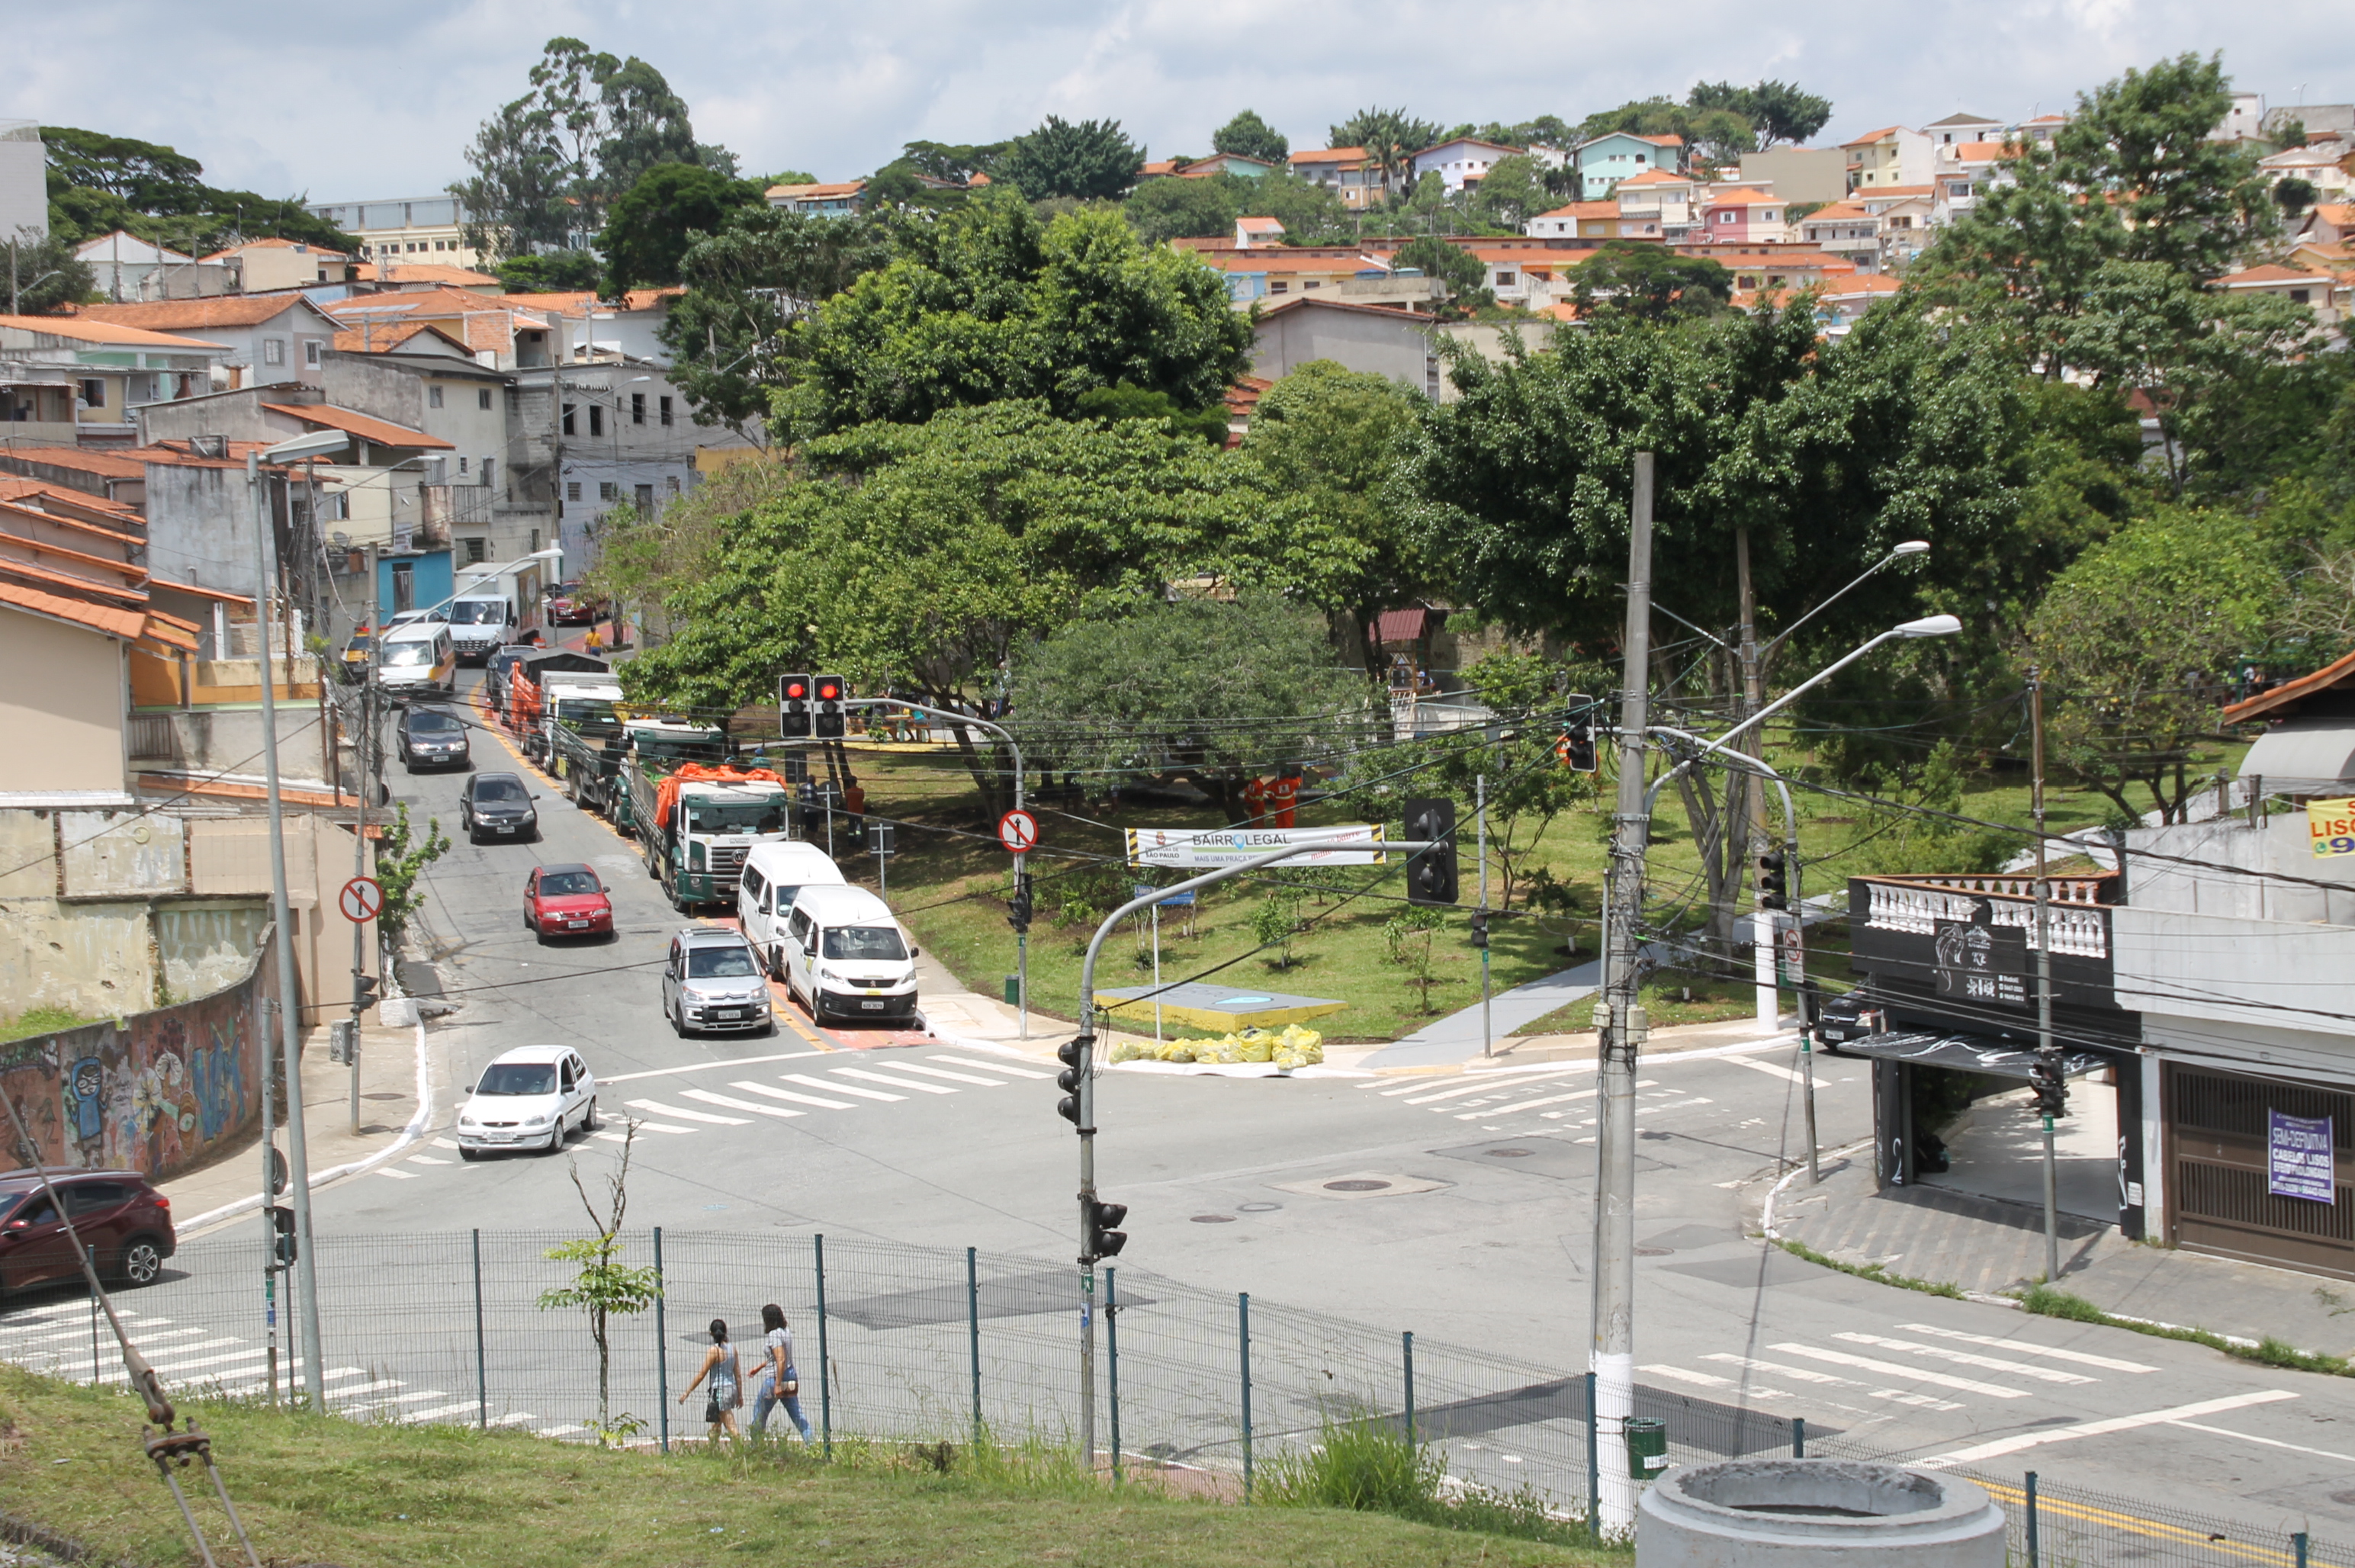 #PraCegoVer - Vista aérea da praça Geraldo Sylvestre Pacheco. A praça é bem arborizada e fica perto da estação Autódromo da CPTM, de onde a foto foi feita.